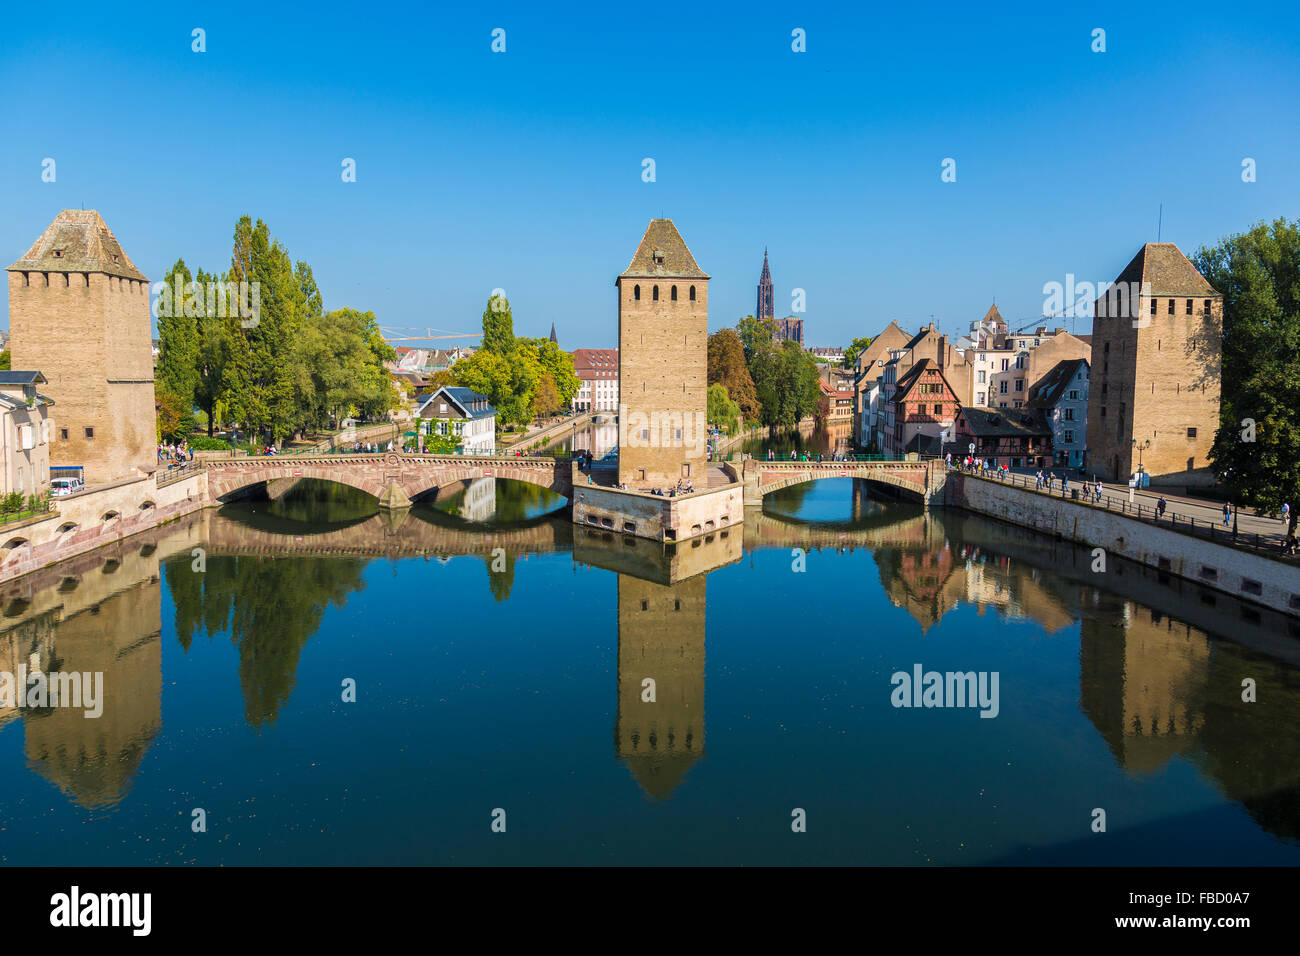 La rivière Ill à Ponts Couverts ponts, tours, Site du patrimoine mondial de l'UNESCO, Strasbourg, Bas-Rhin, Alsace, France Banque D'Images